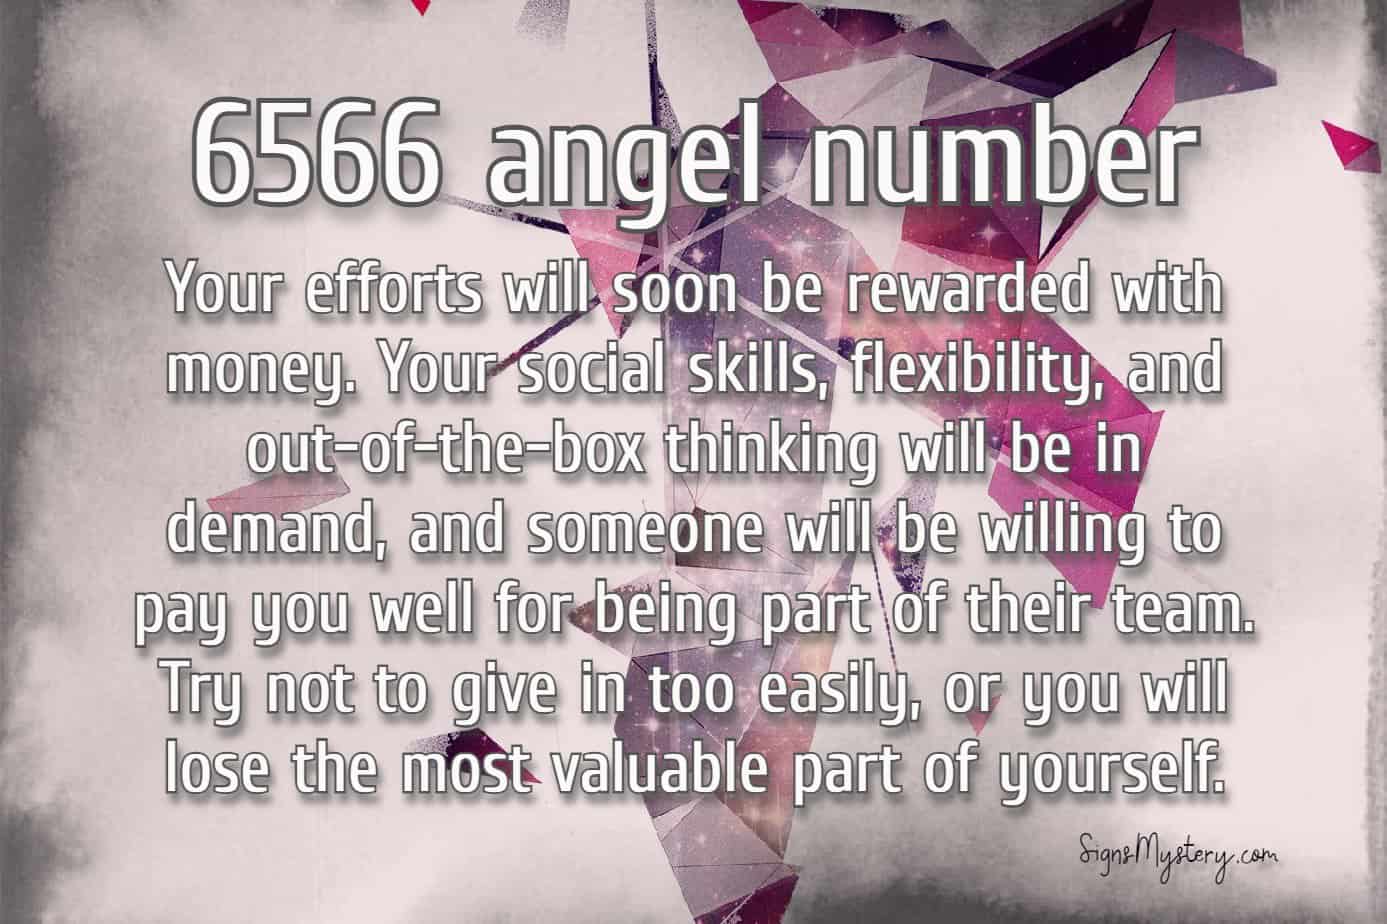 6566 angel number